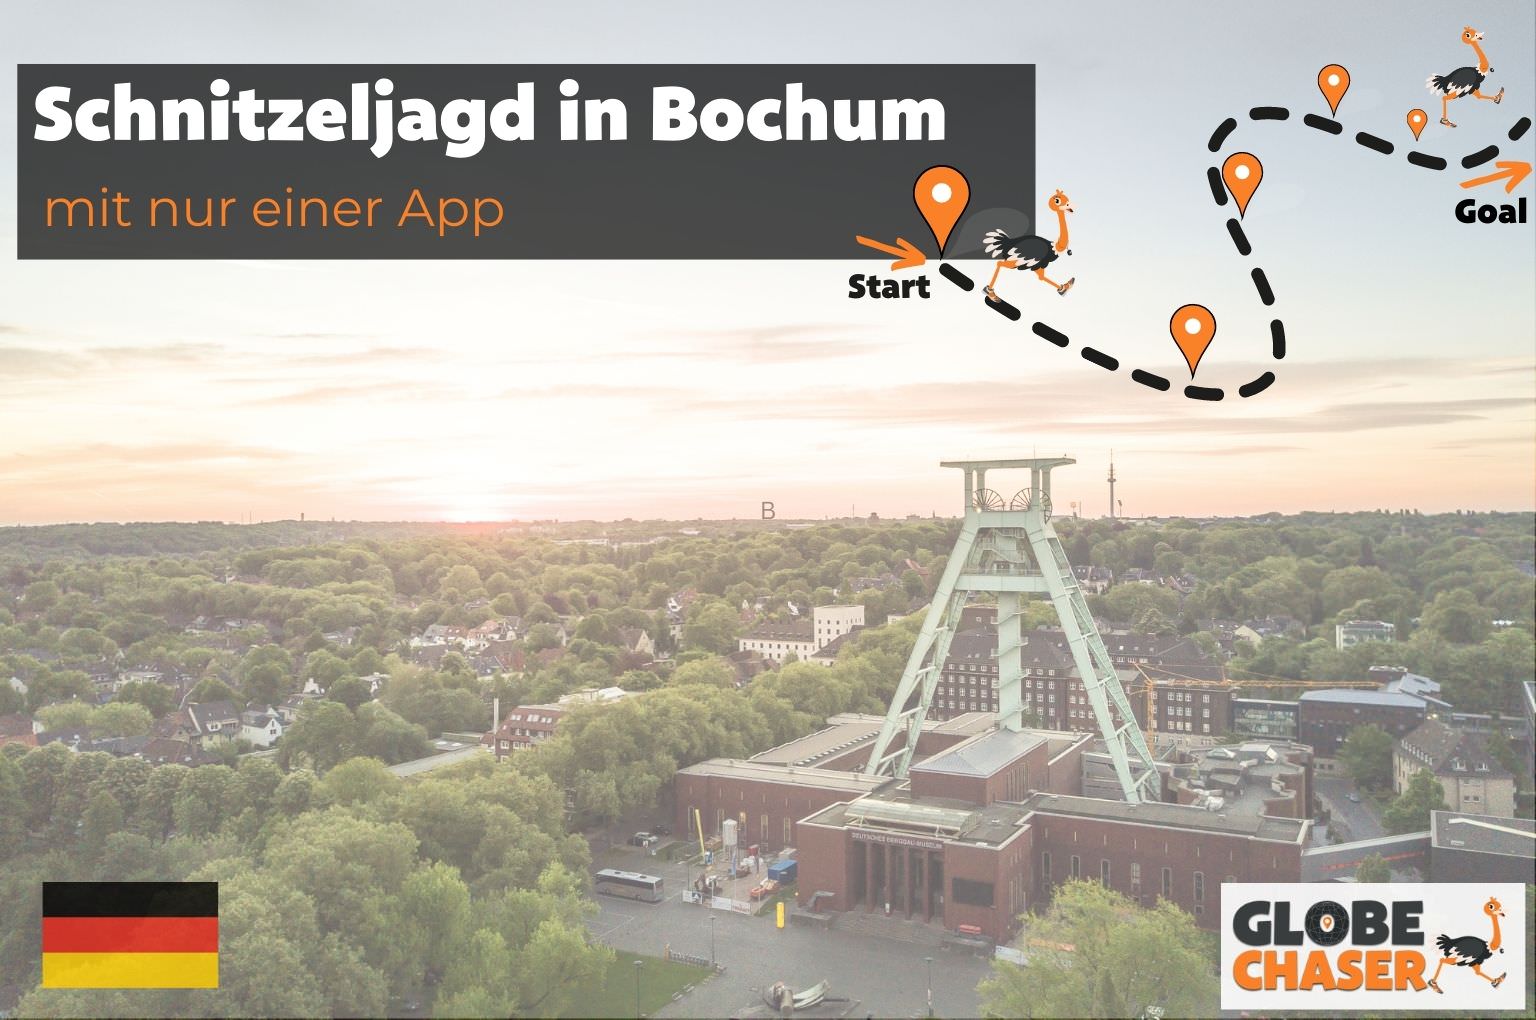 Schnitzeljagd in Bochum mit App - Globe Chaser Erlebnisse Deutschland